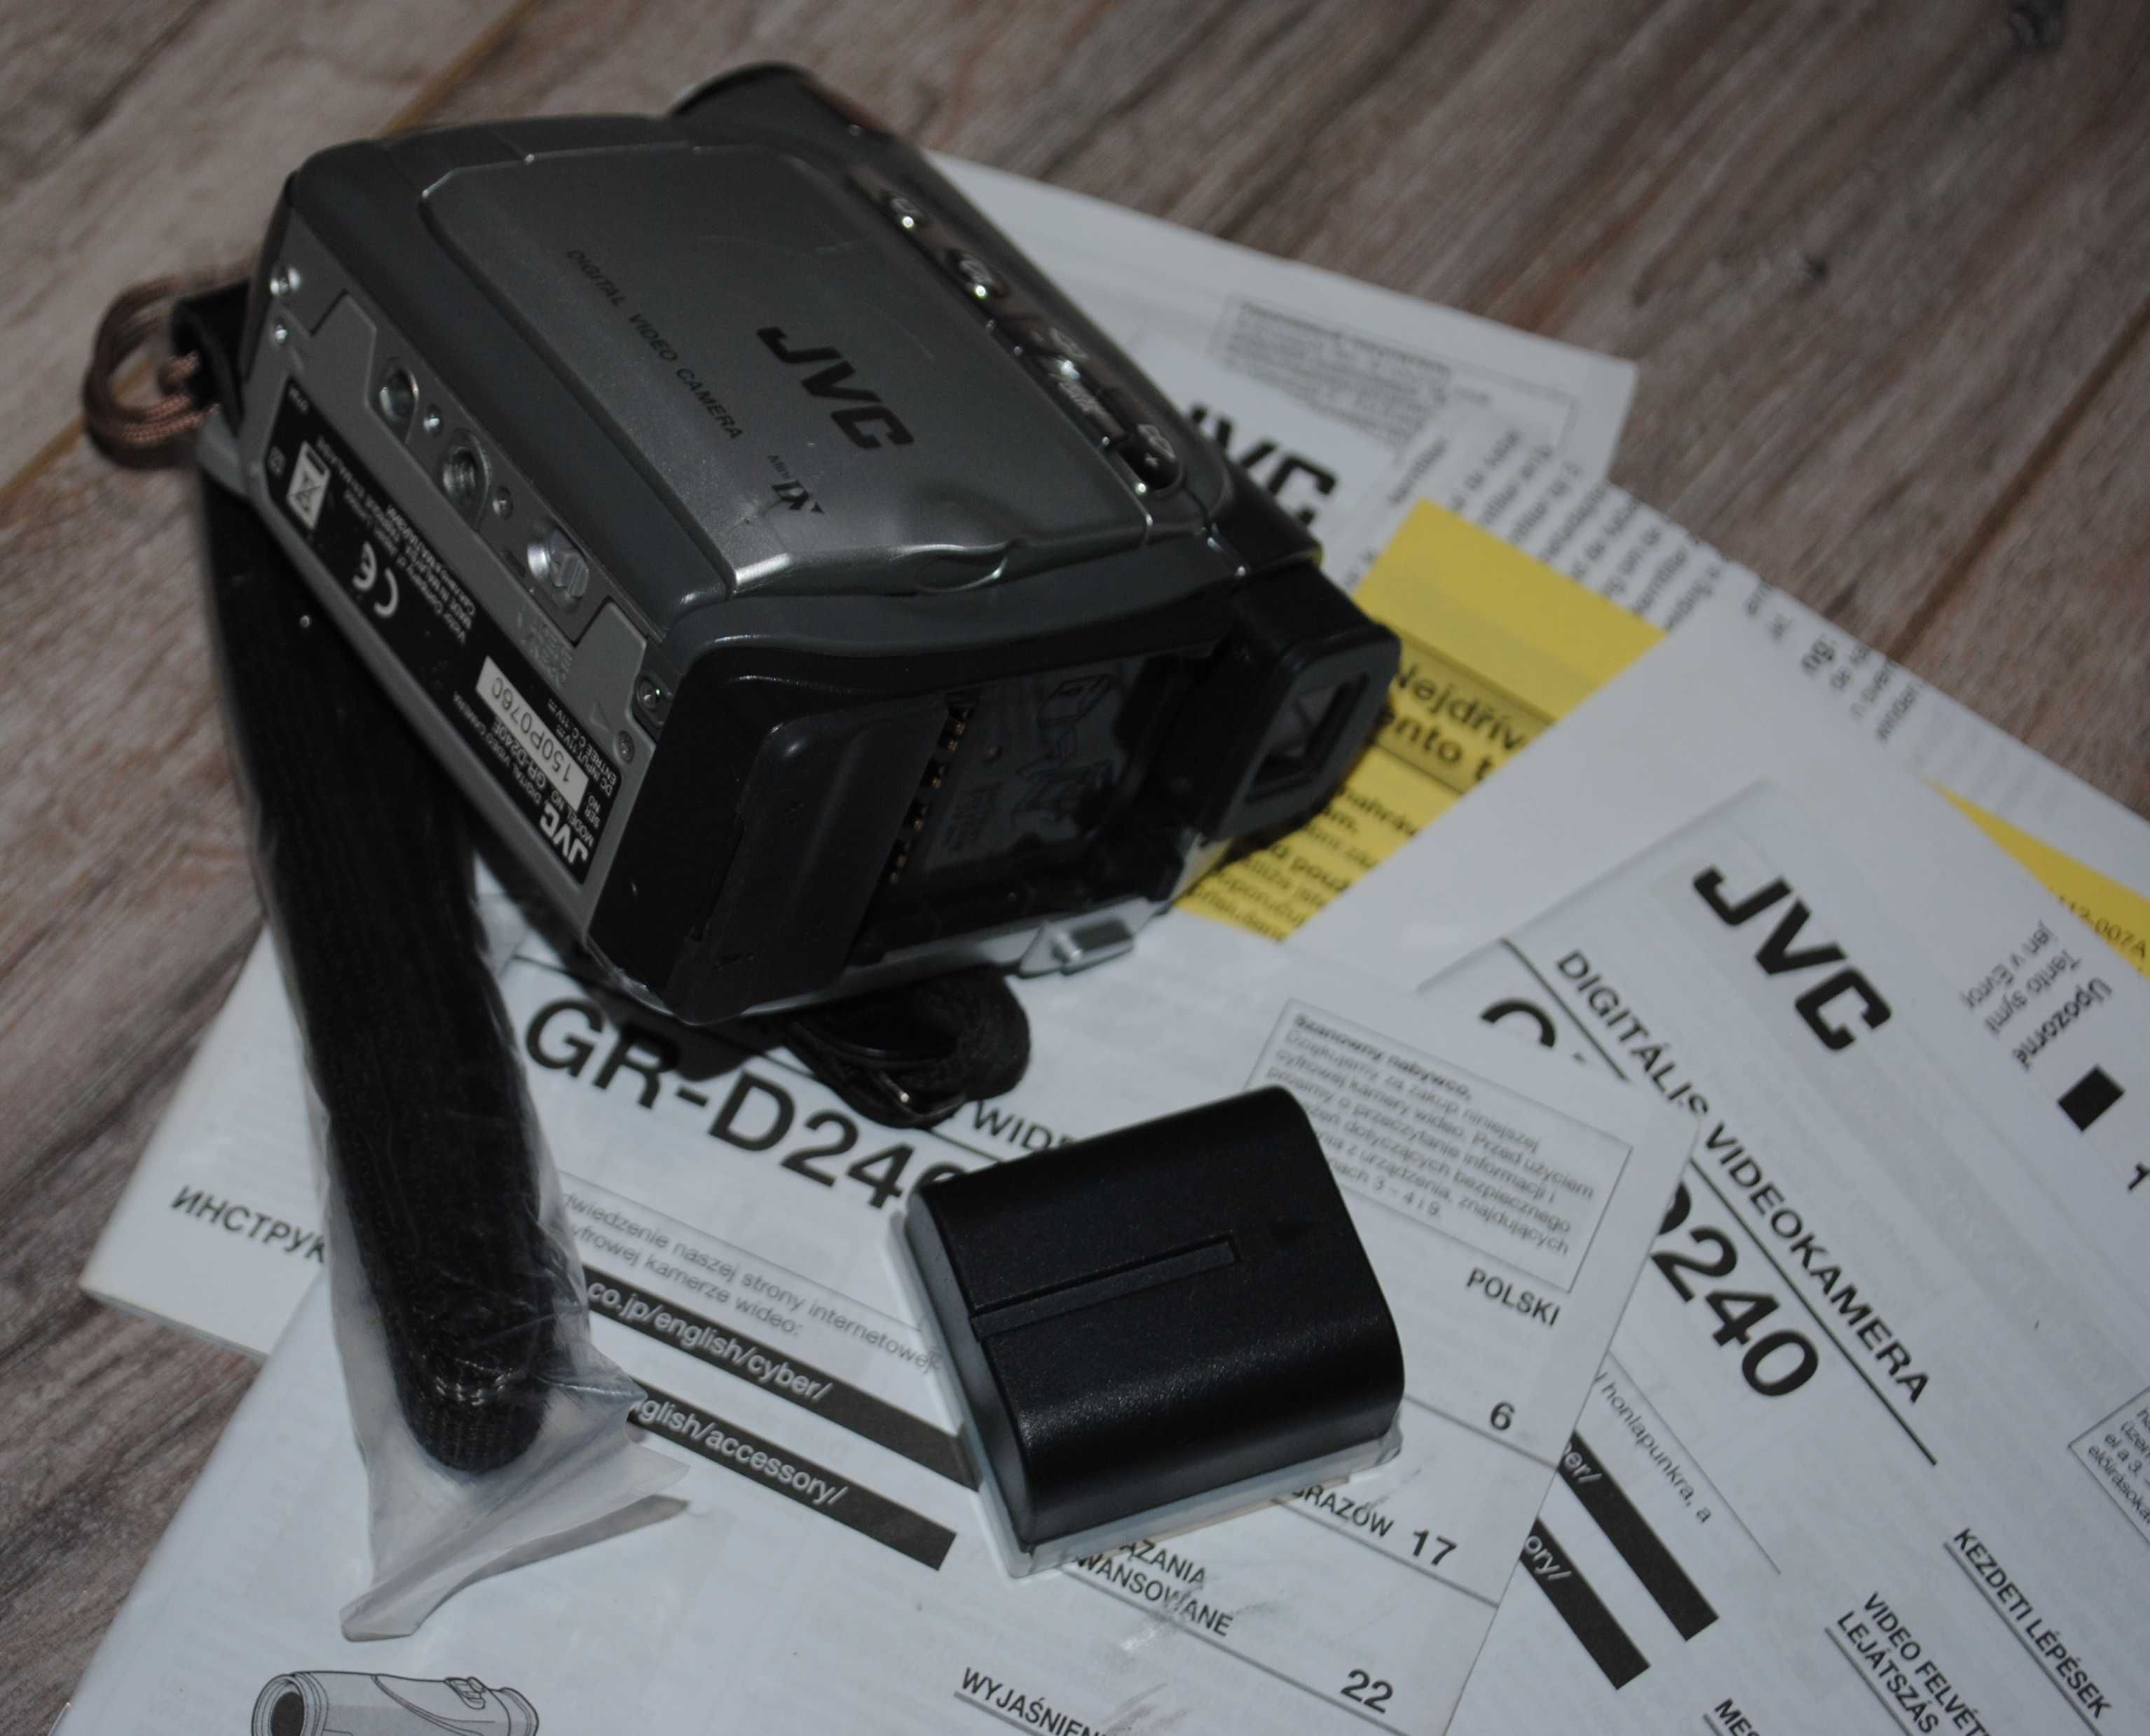 Відеокамера JVC GR-D240E (умовно робоча, бо втрачено зарядку)